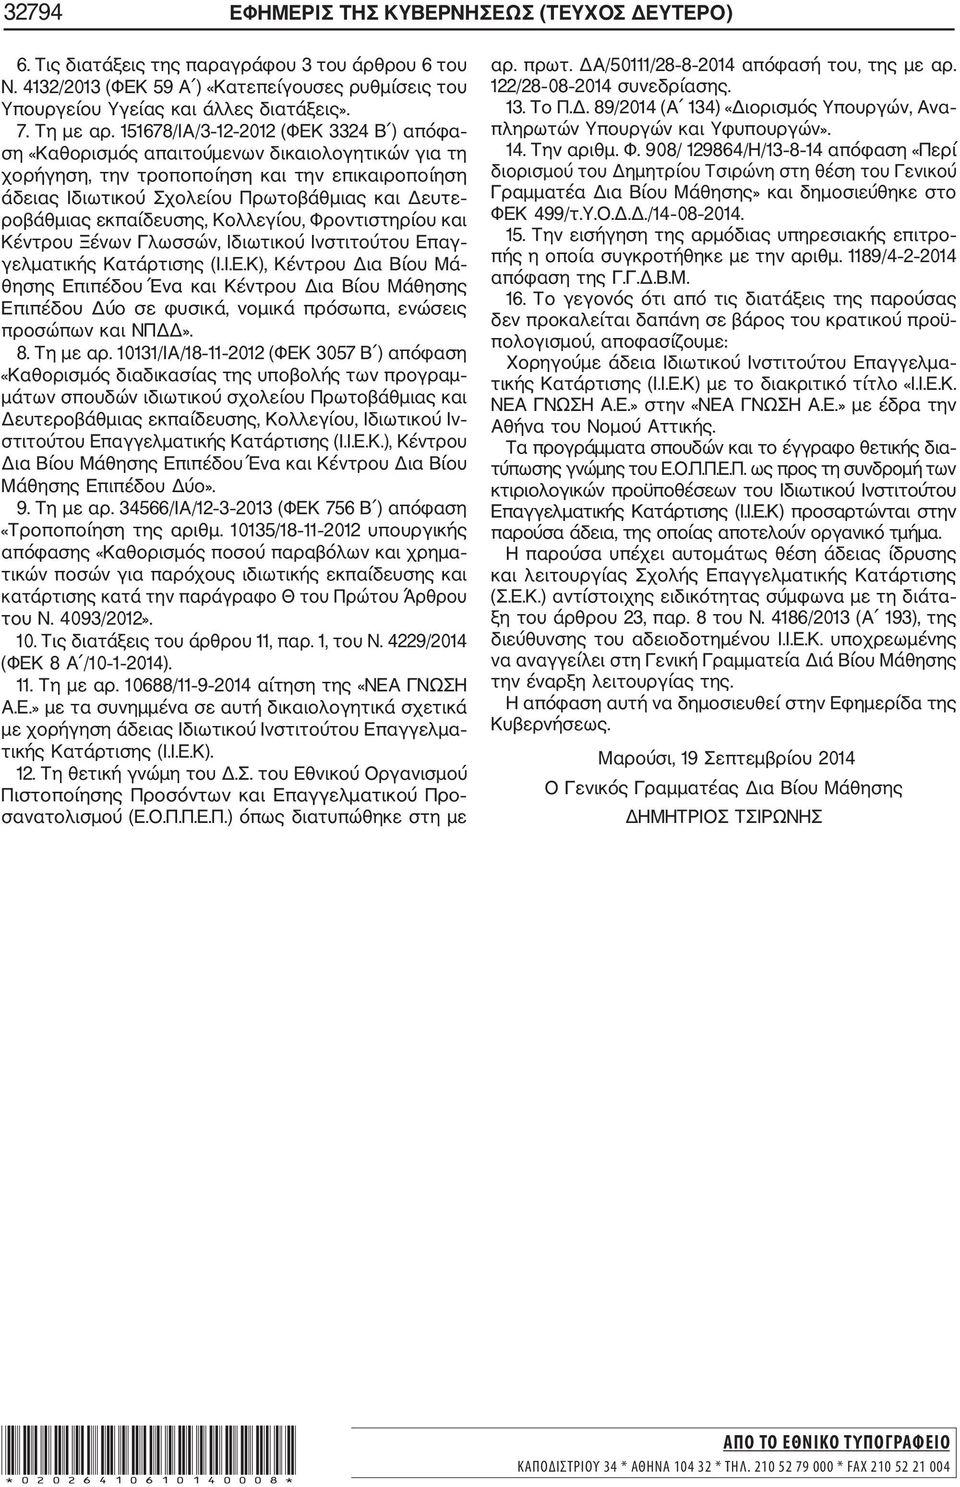 151678/ΙΑ/3 12 2012 (ΦΕΚ 3324 Β ) απόφα ση «Καθορισμός απαιτούμενων δικαιολογητικών για τη χορήγηση, την τροποποίηση και την επικαιροποίηση άδειας Ιδιωτικού Σχολείου Πρωτοβάθμιας και Δευτε ροβάθμιας